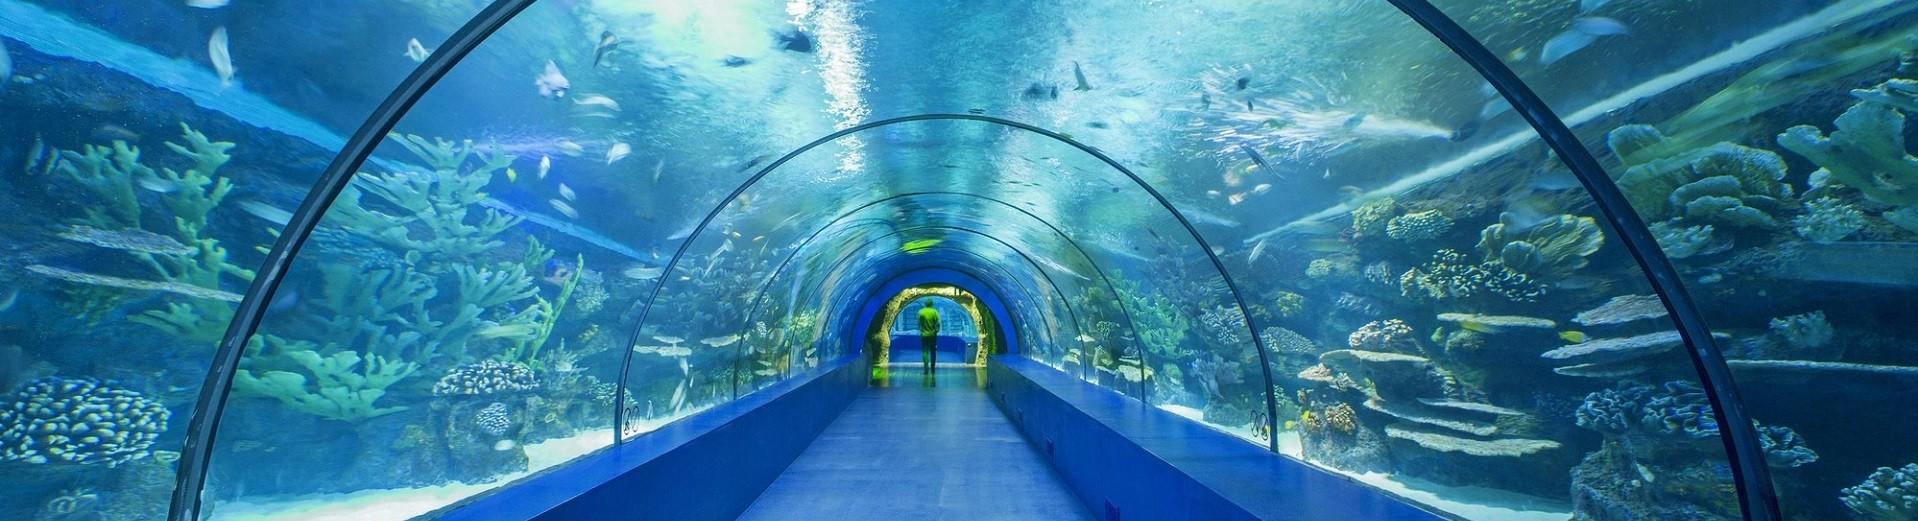 آکواریوم آنتالیا antalya aquarium